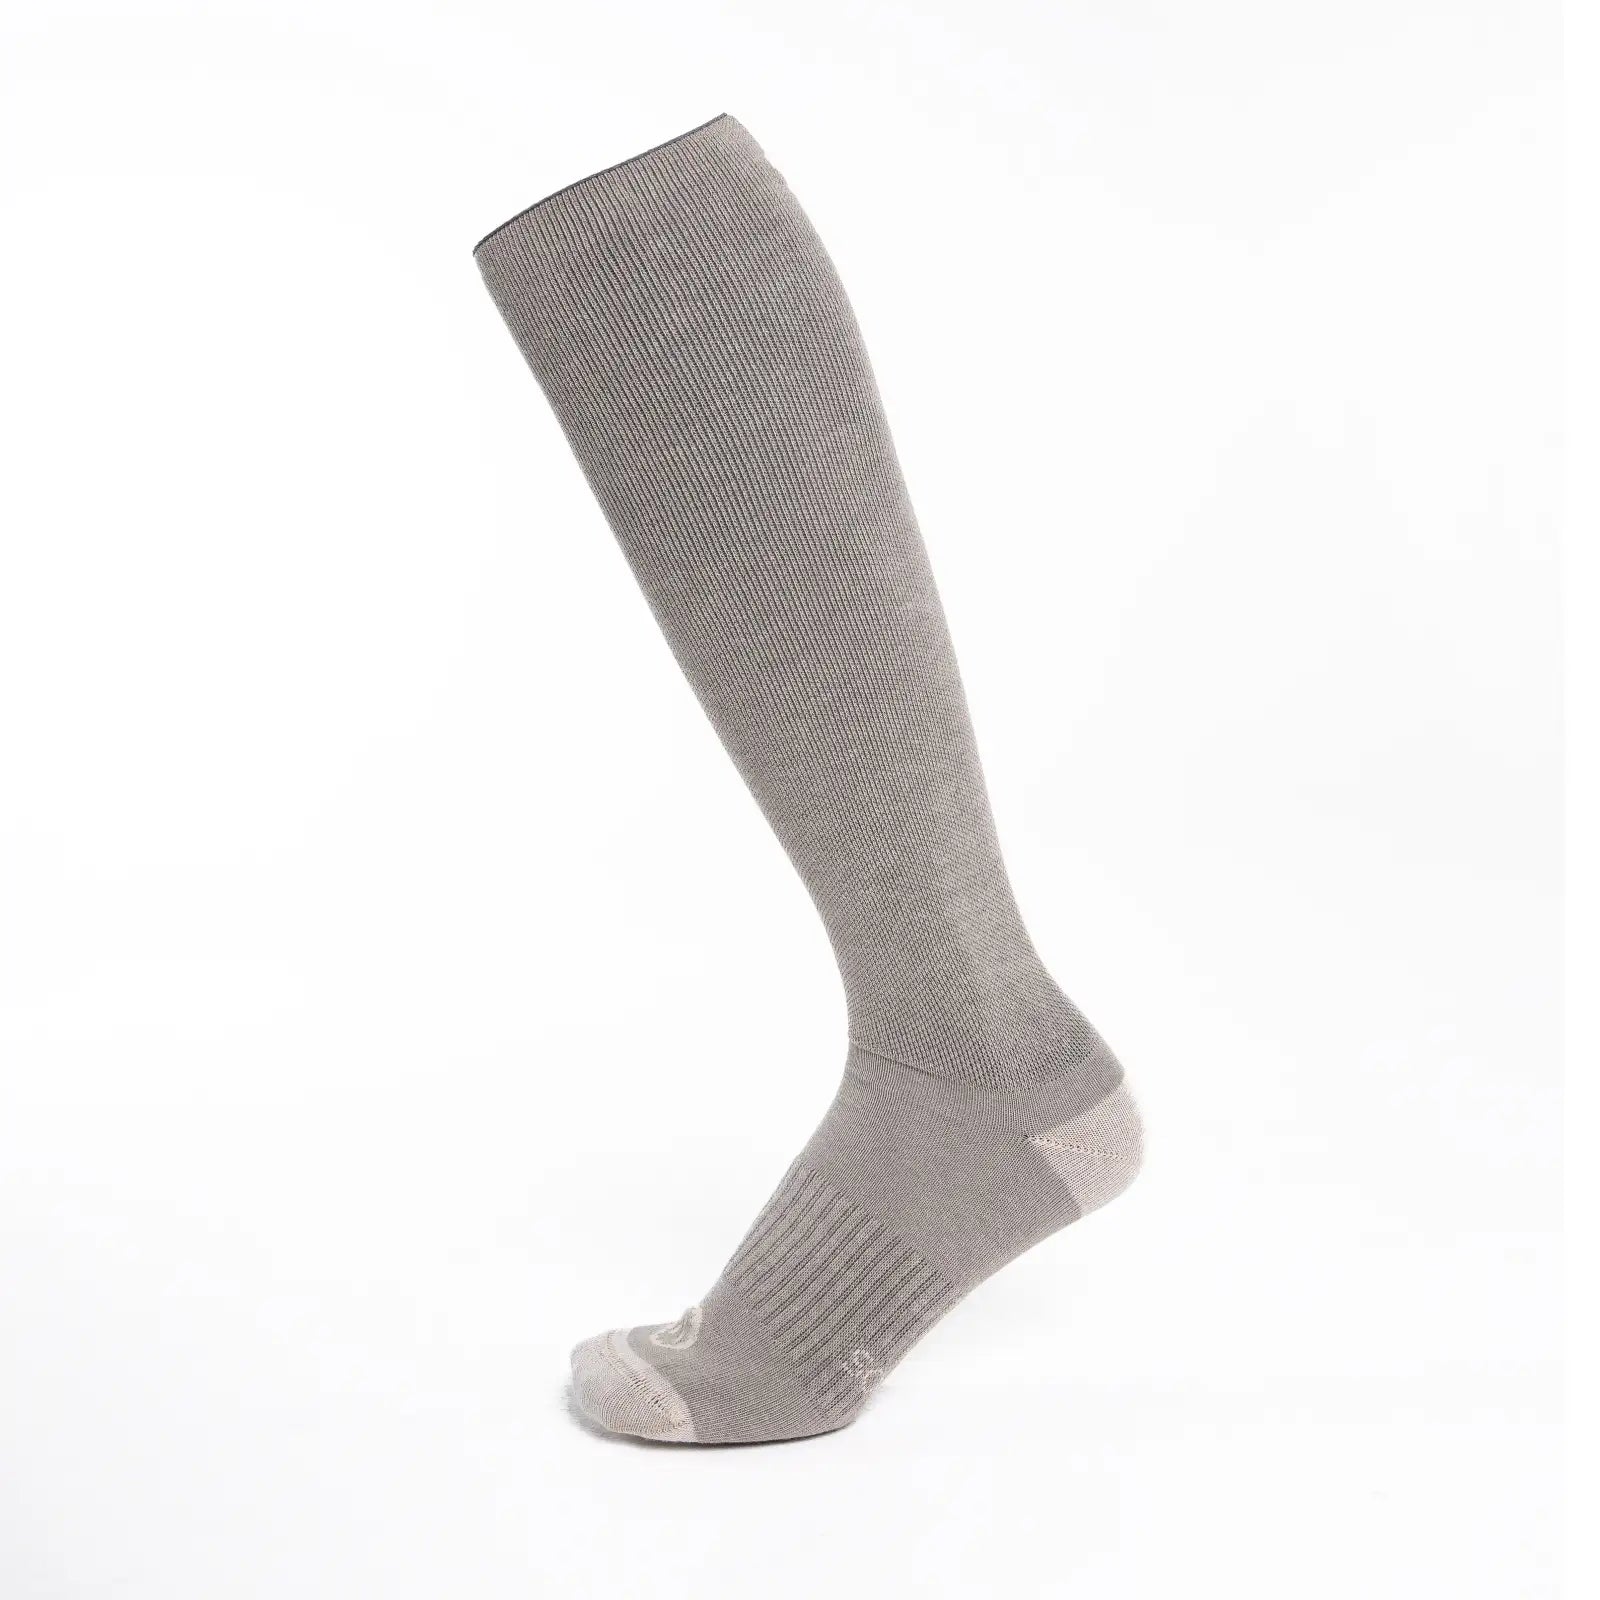 La compresión gradual en los calcetines – Calcetinos